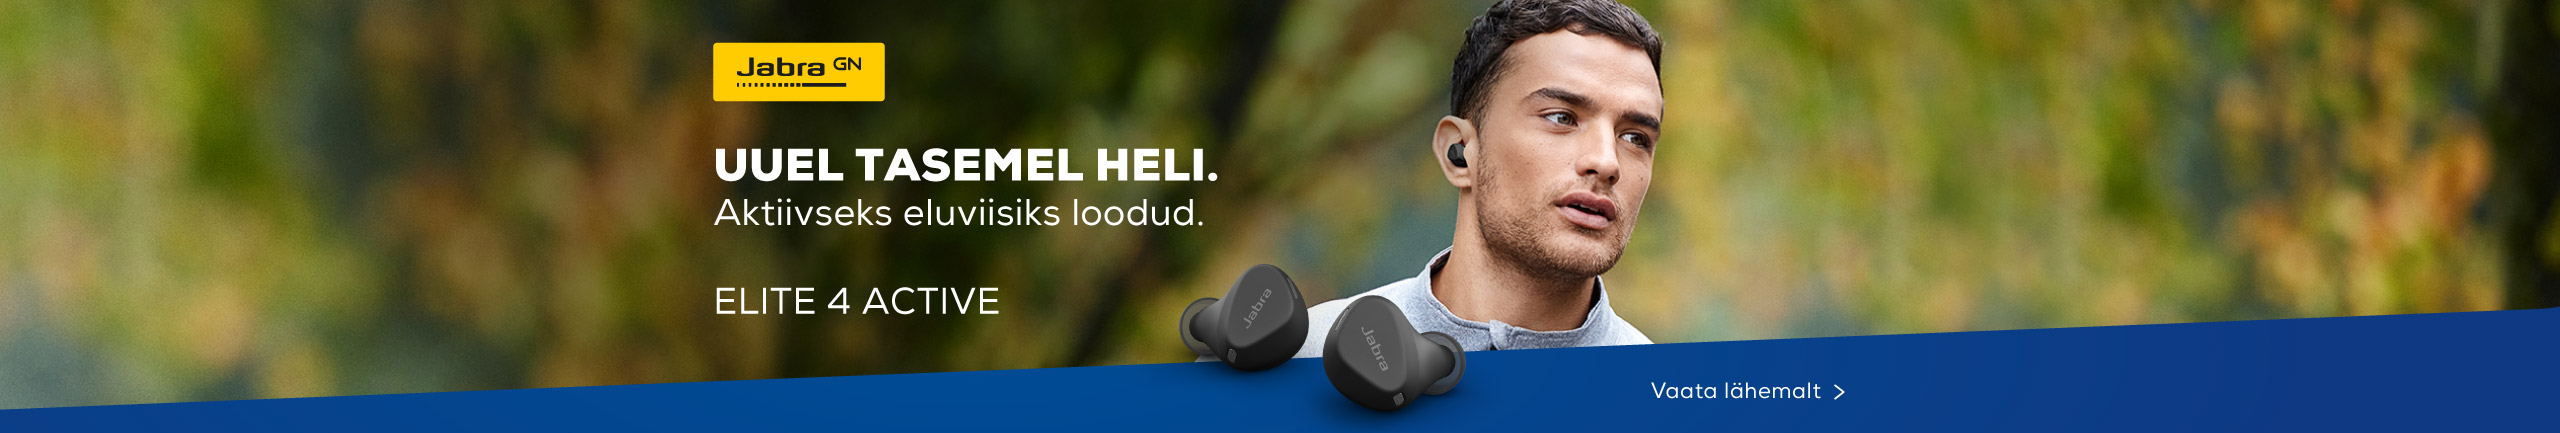 Discover new Jabra Elite 4 Active headphones!